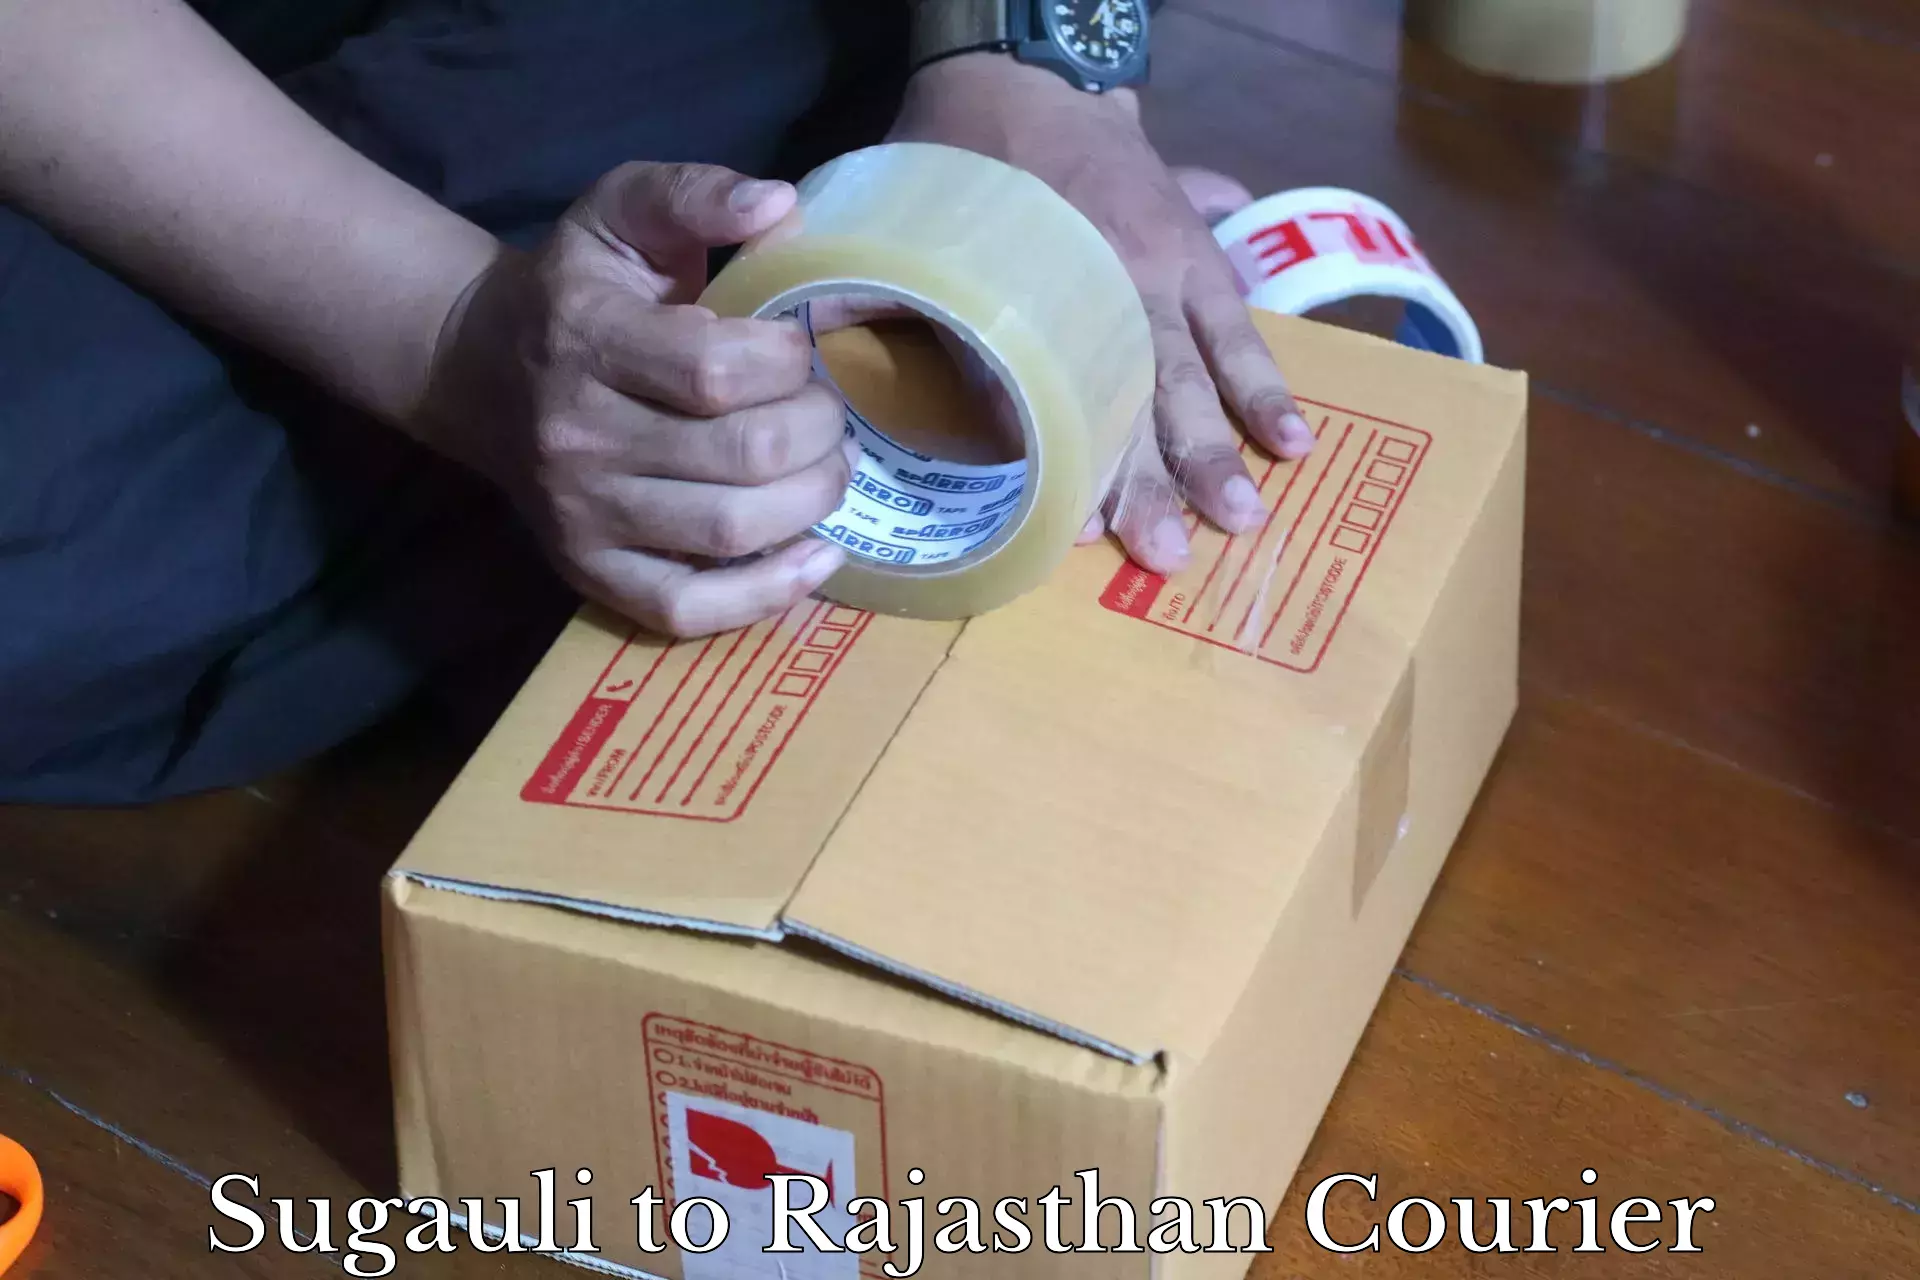 Professional courier handling Sugauli to Nokha